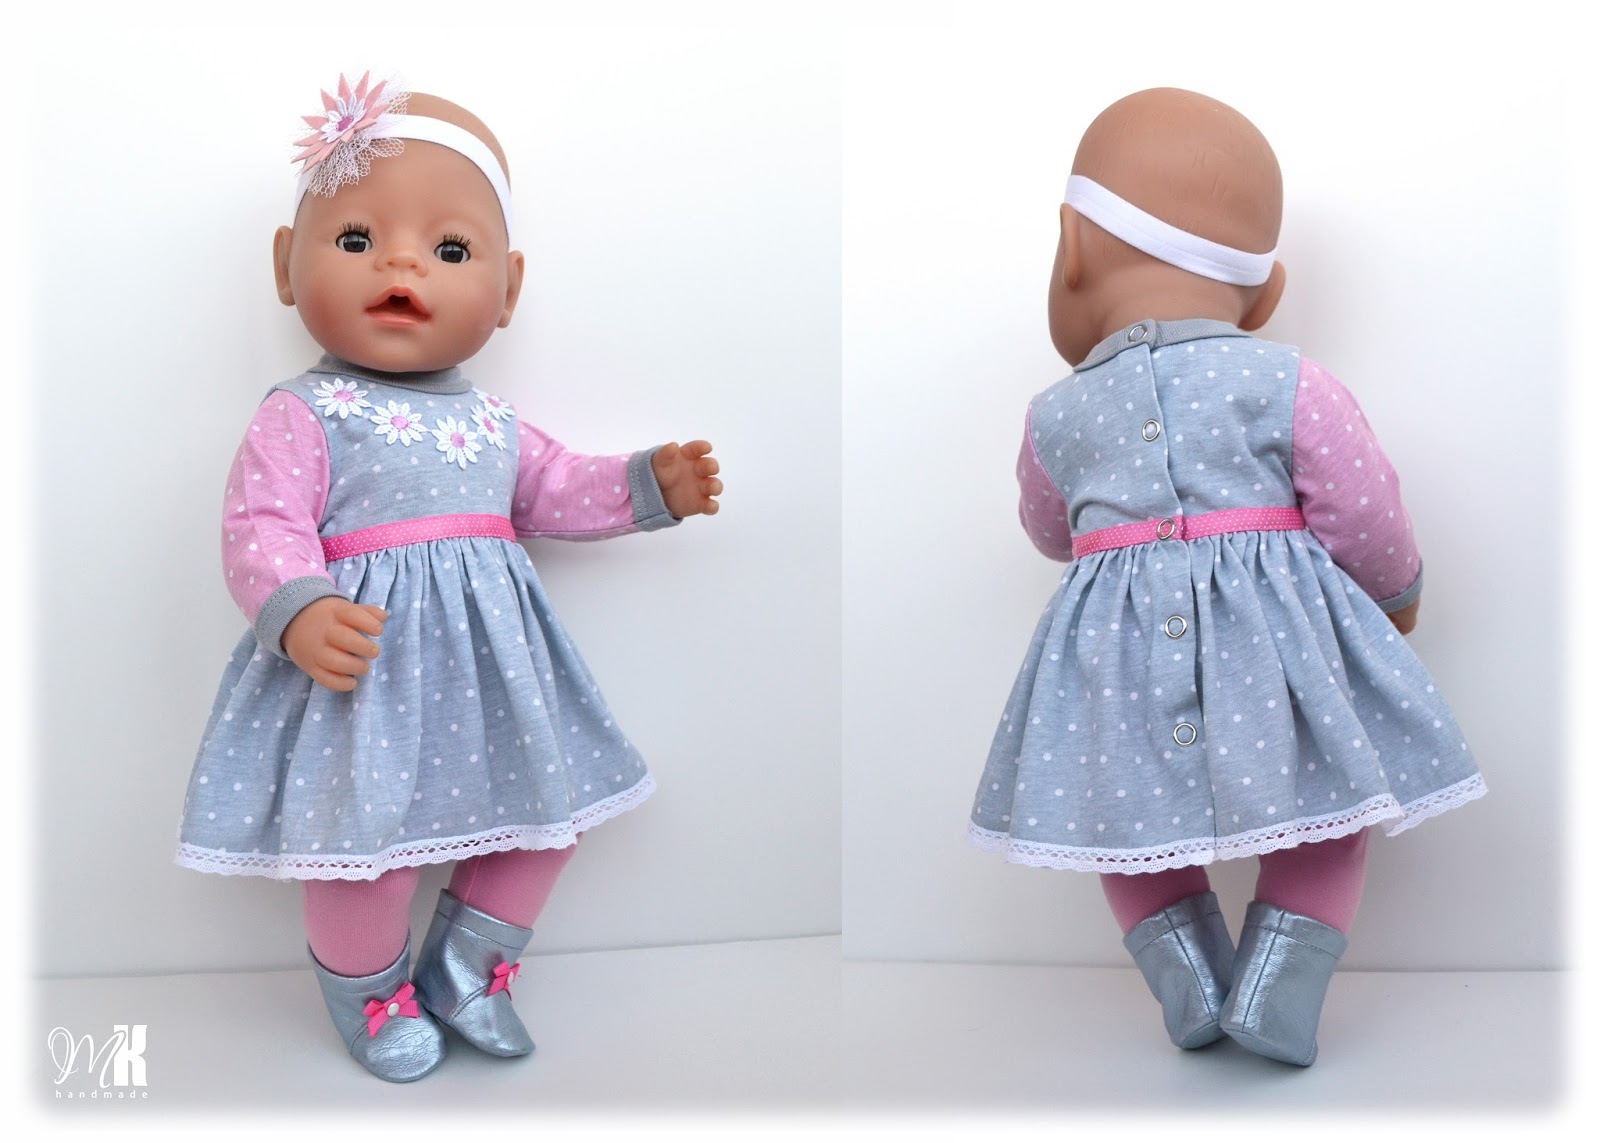 Одежда для кукол комплект для Беби бон беби Анабель аксессуары слип набор для куклы подарок девочке